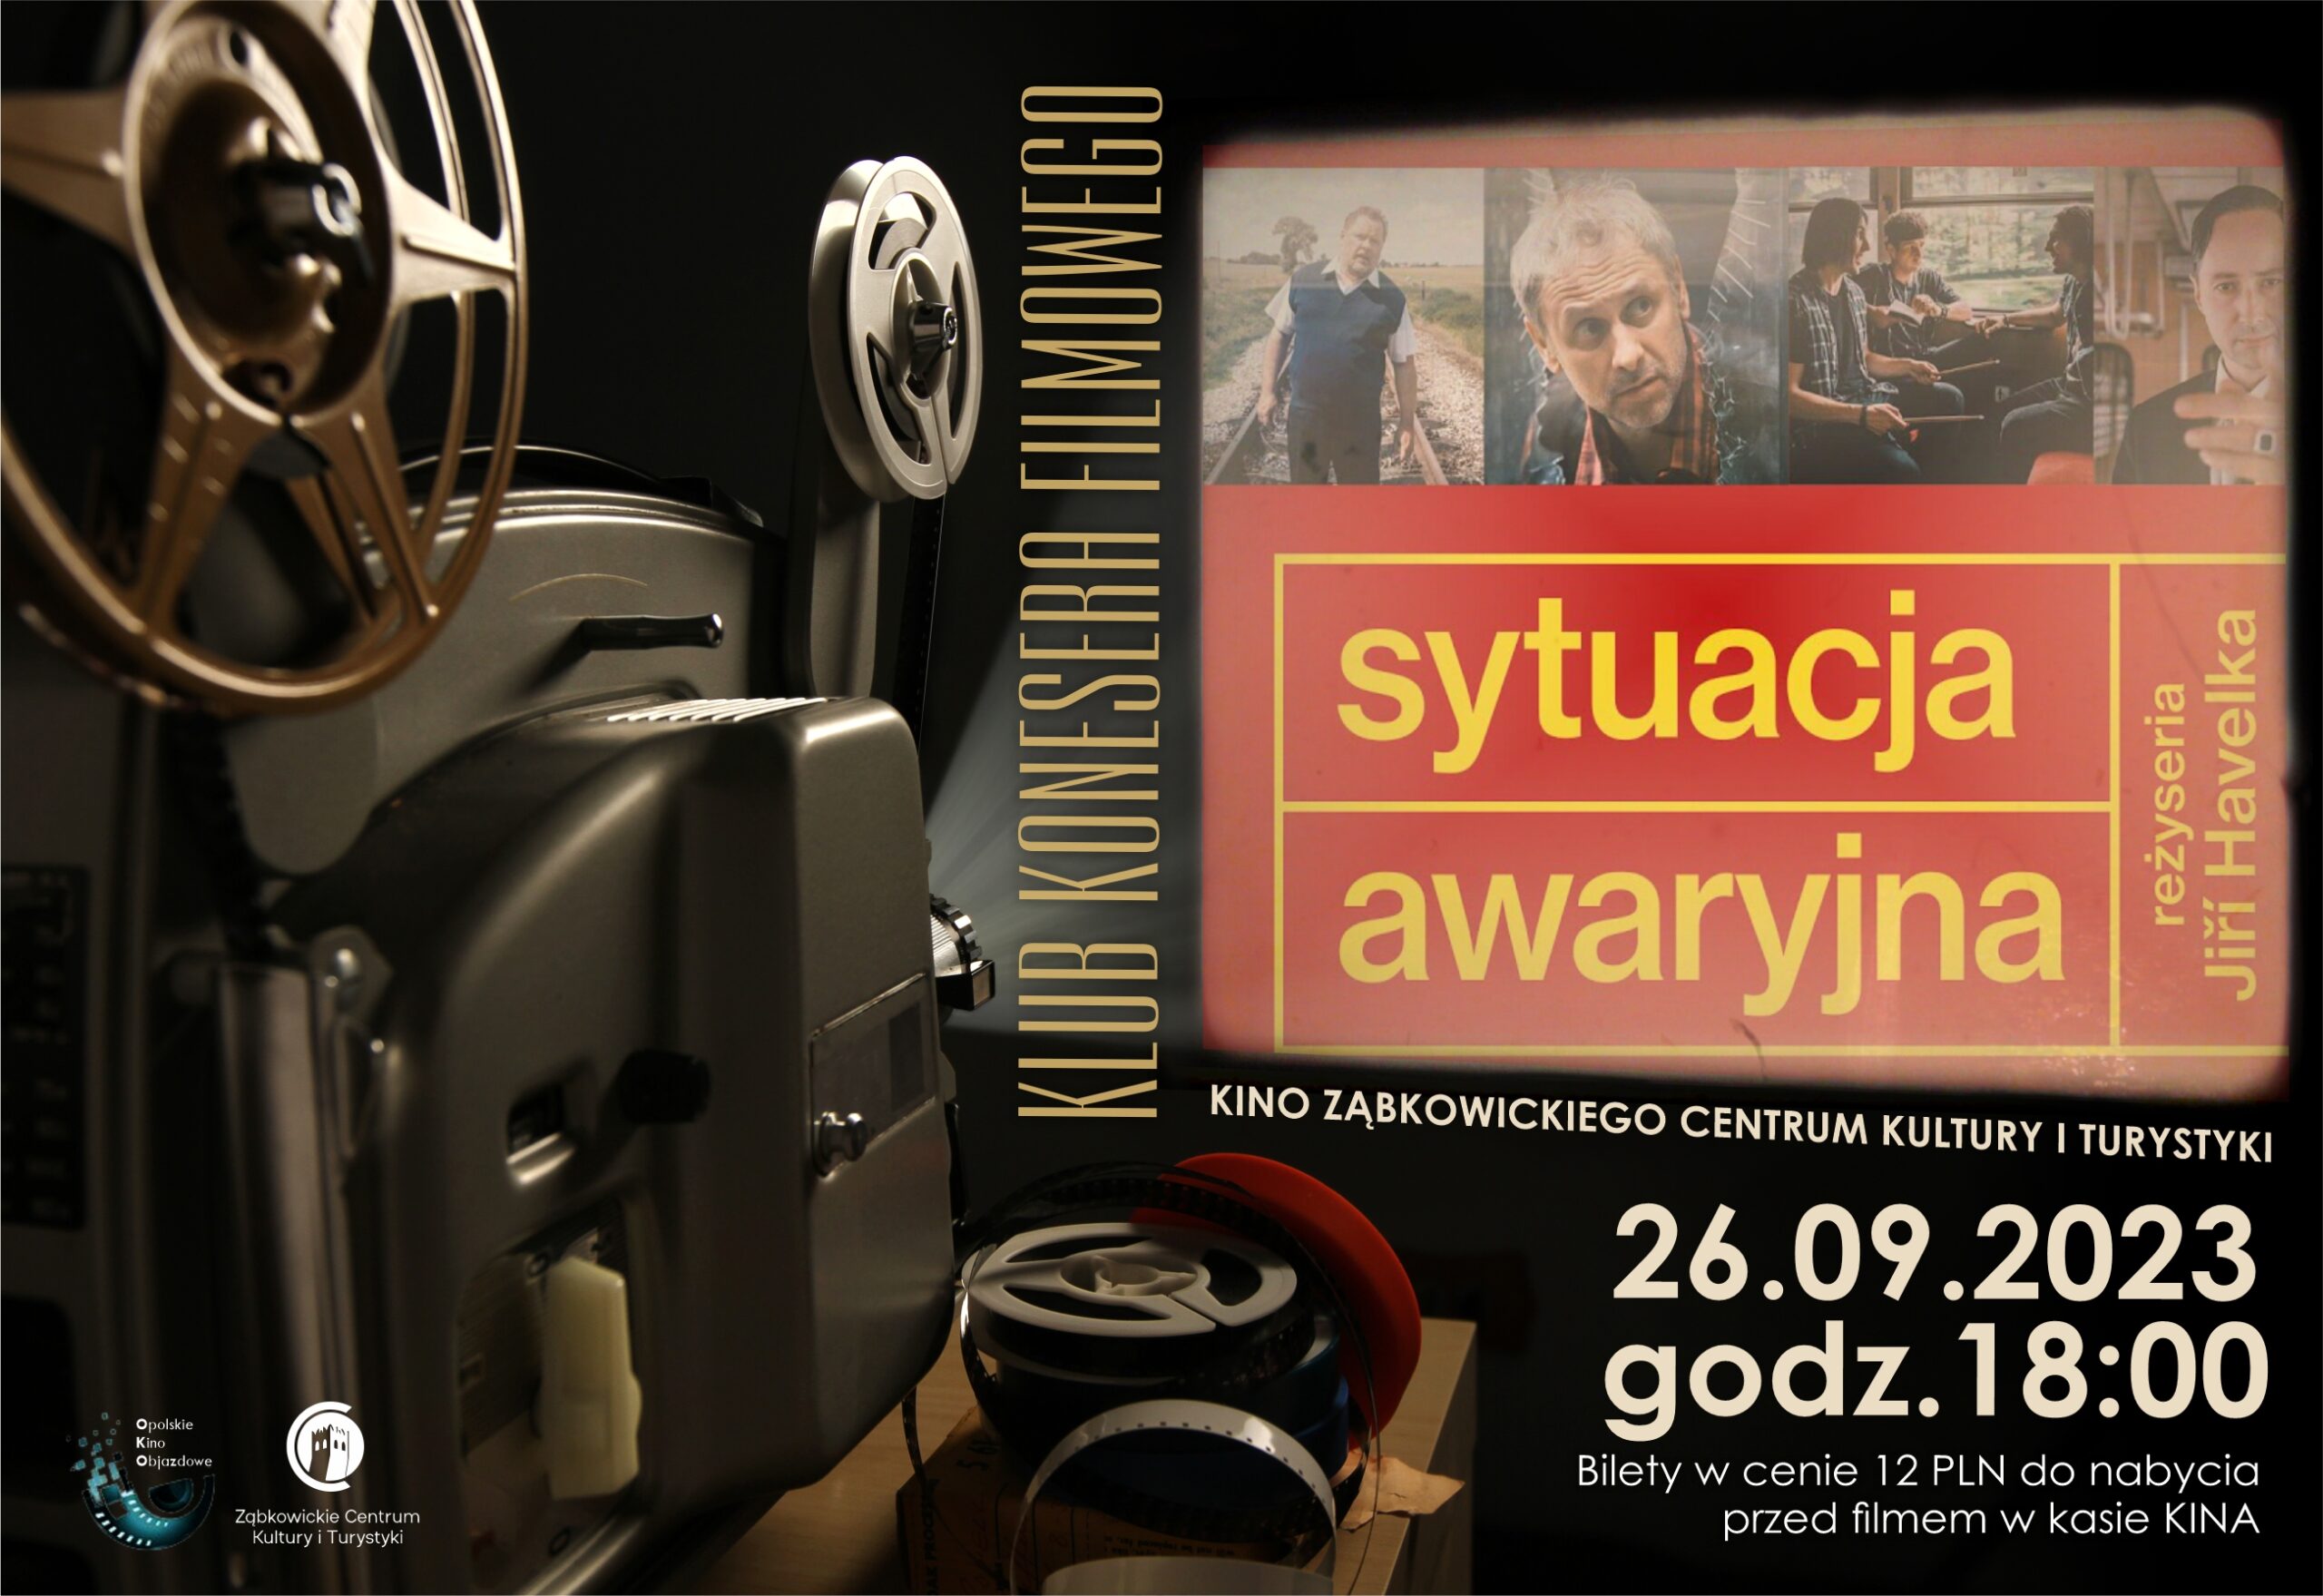 Plakat informujący o seansie filmu "Sytuacja awaryjna" 26 września 2023 o godzinie 18:00 w kinie Ząbkowickiego Centrum Kultury i Turystyki